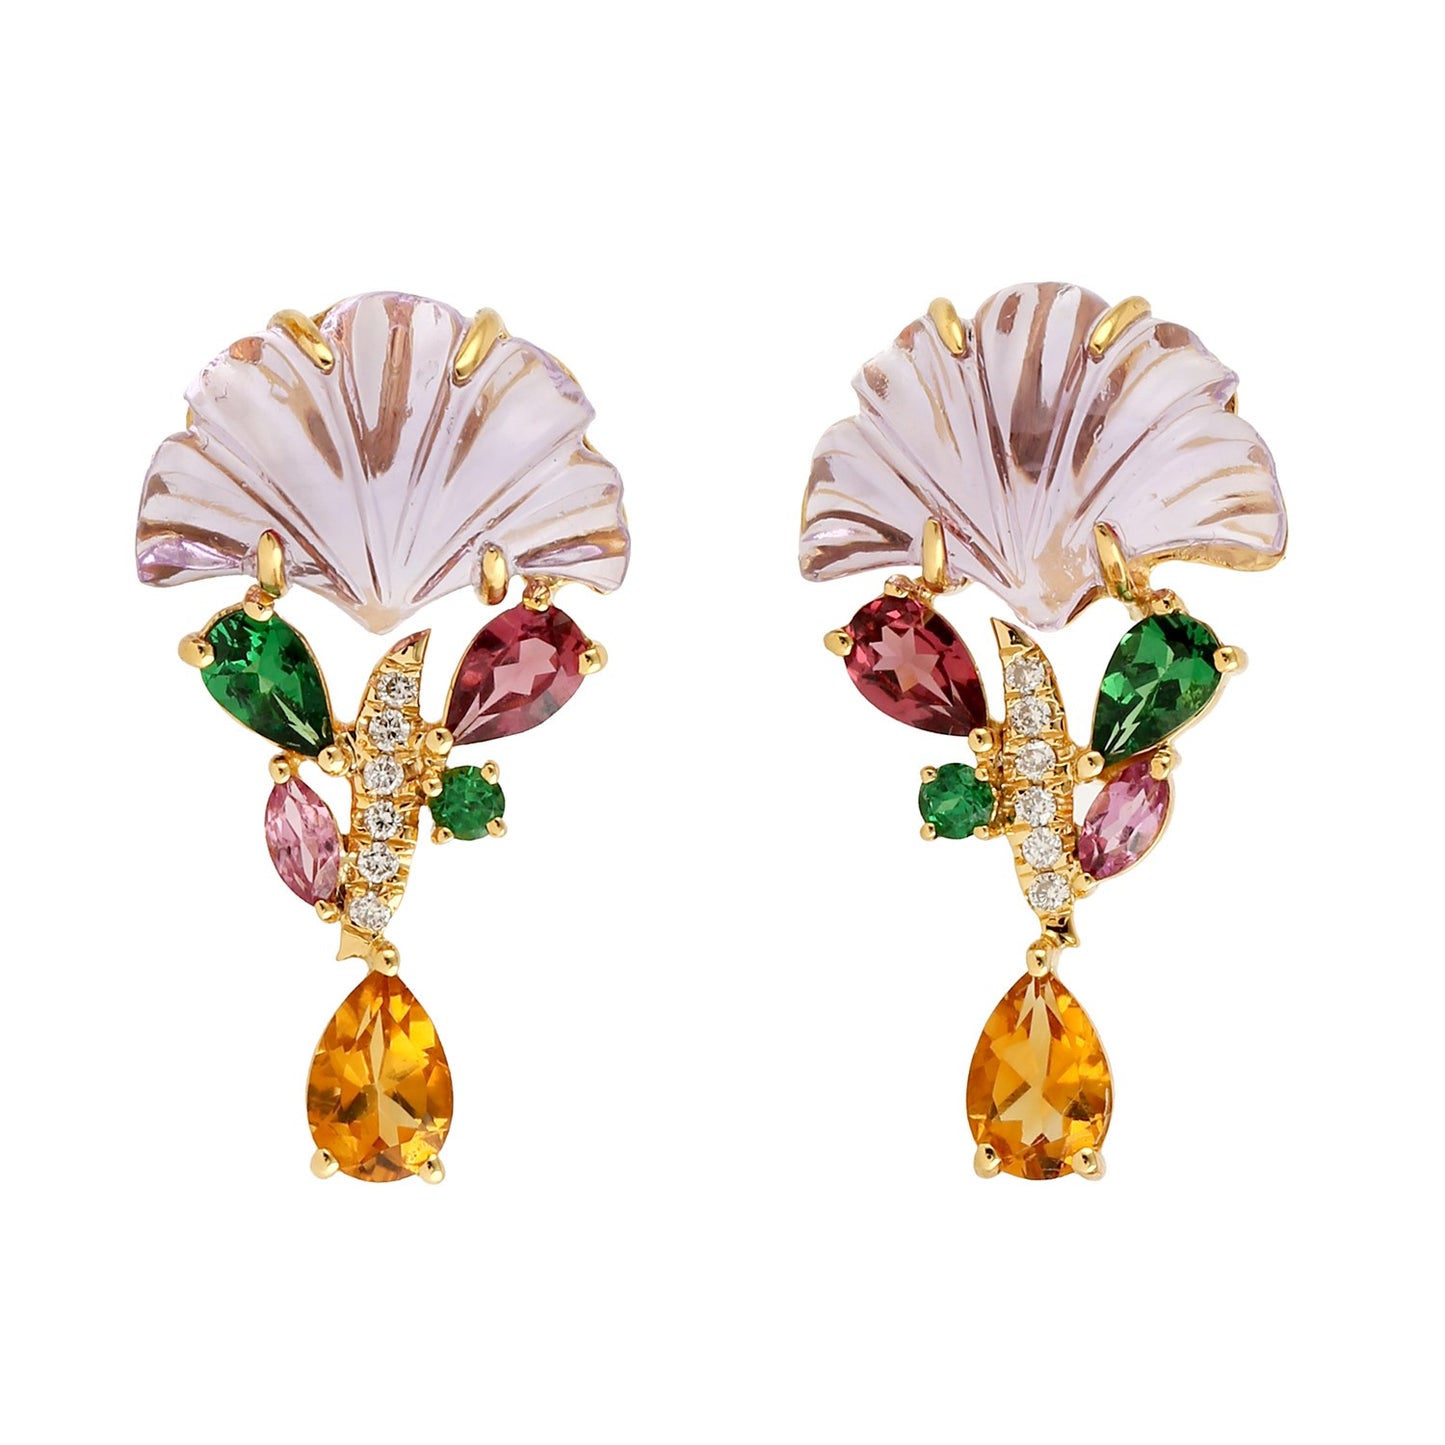 Sea Flower Earrings